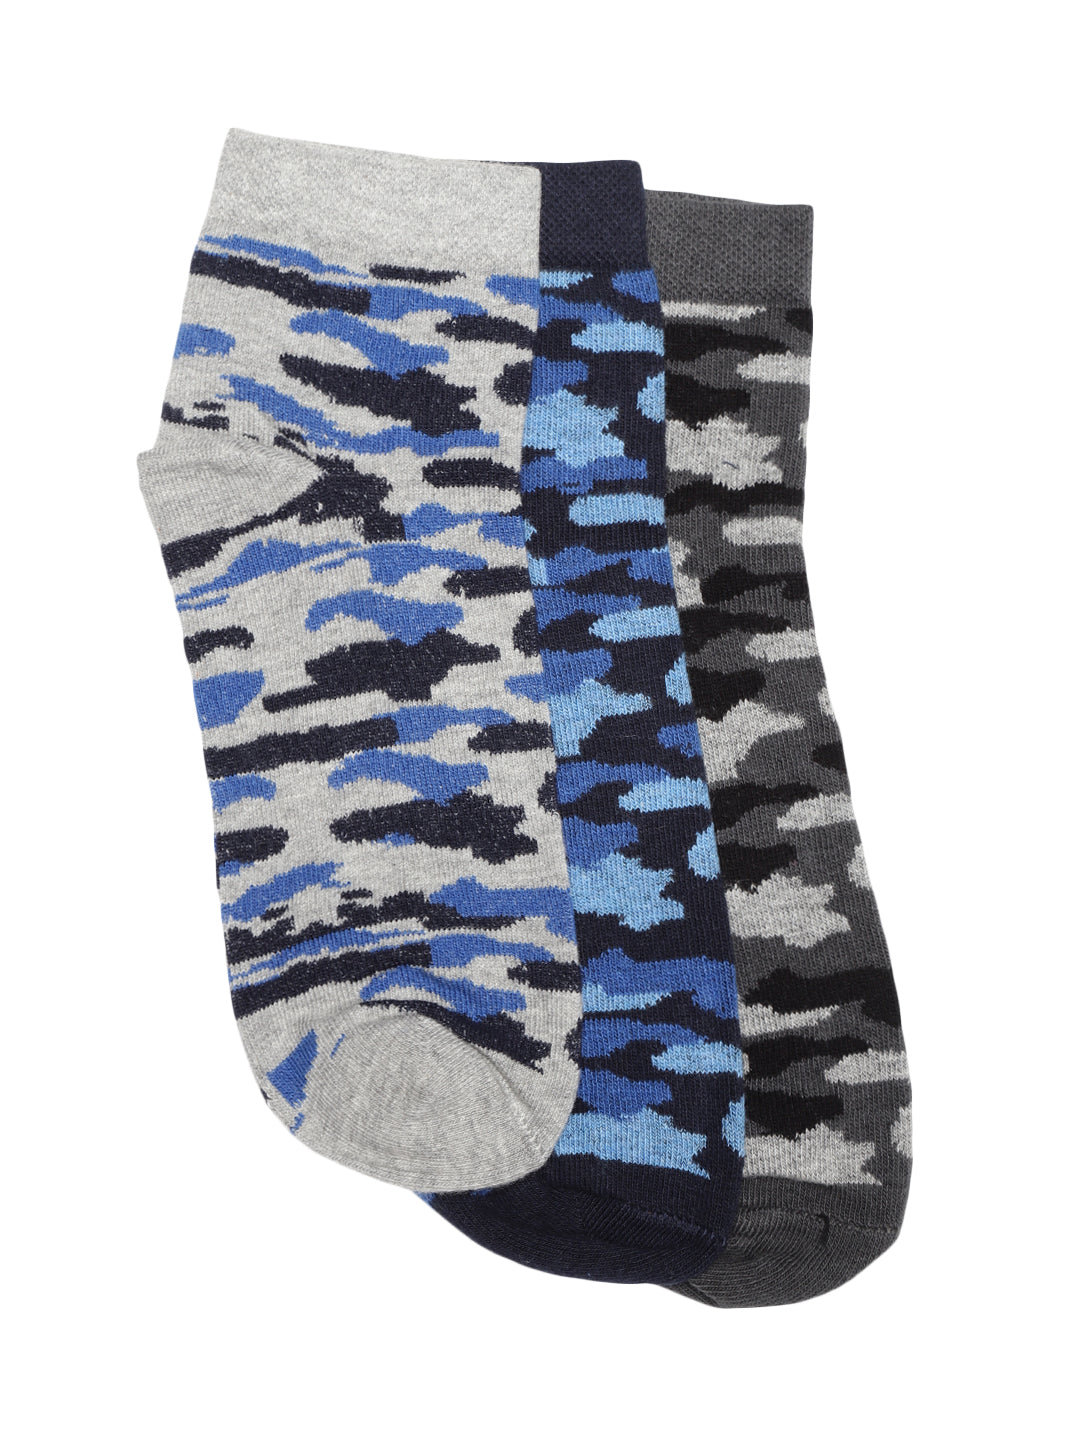 Blueberry set of 3 multi colour ankle length socks